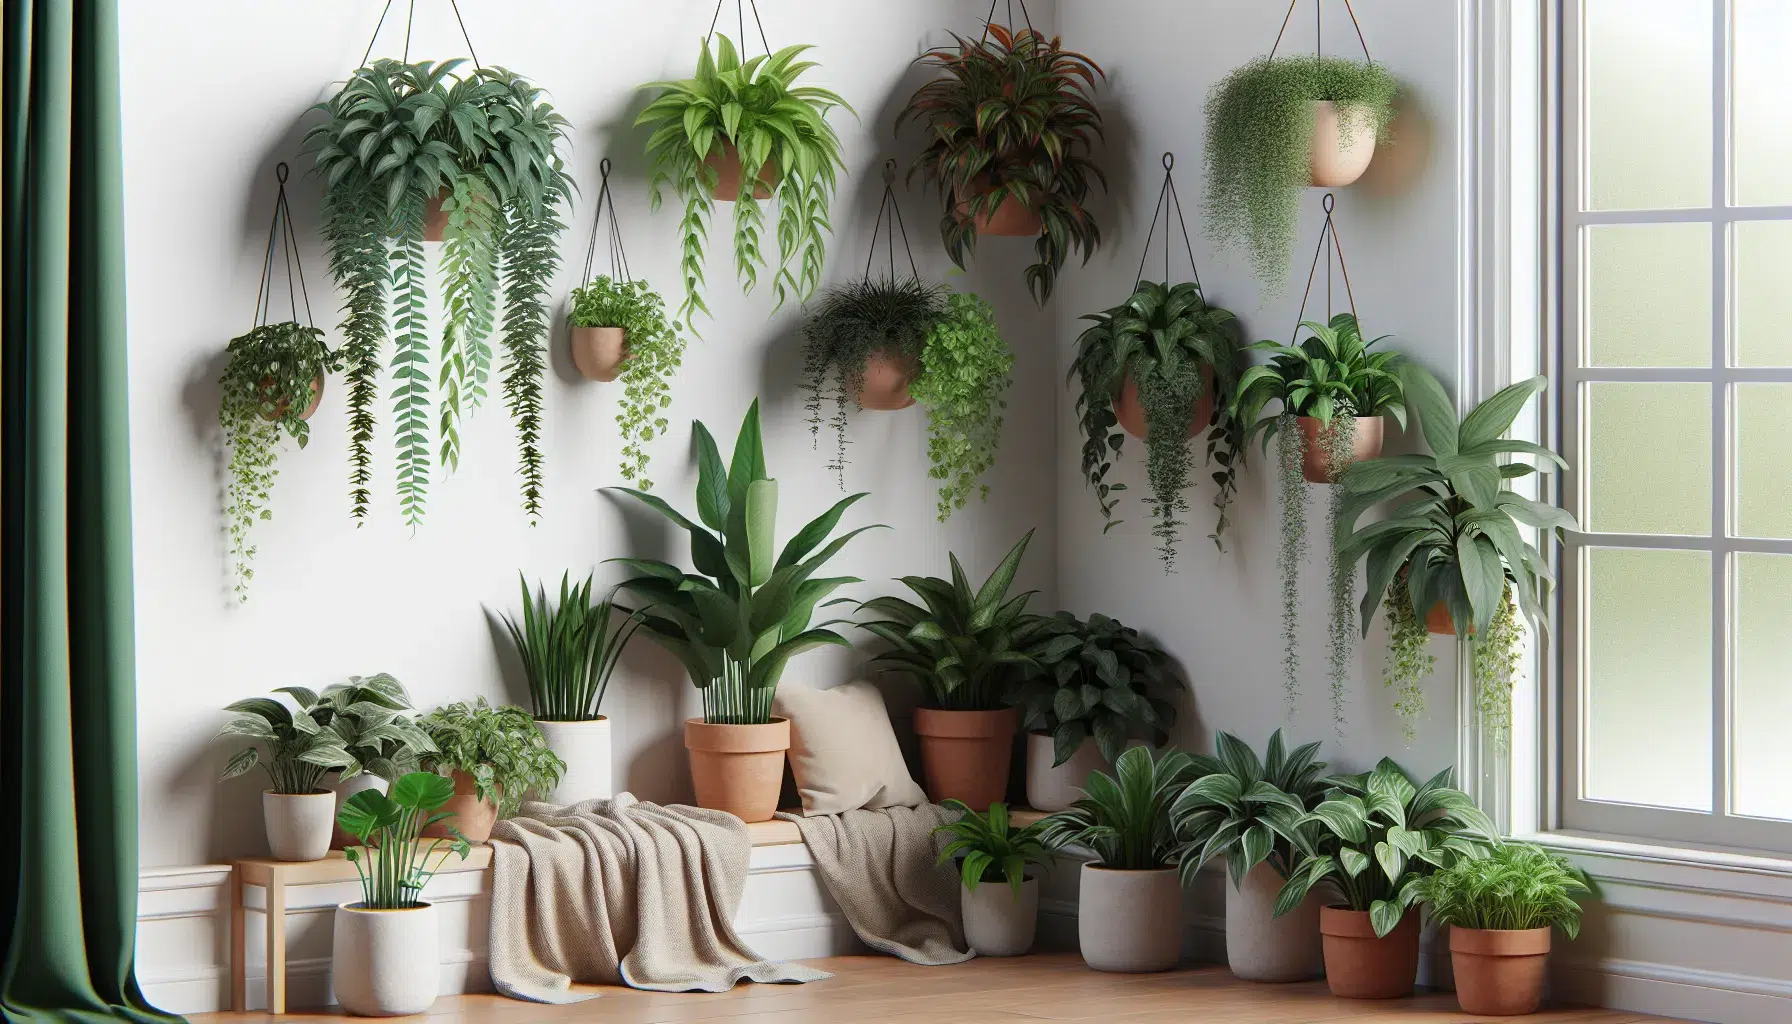 Imagen de un rincón acogedor con siete variedades de plantas colgantes de interior, resaltando su belleza y fácil mantenimiento.